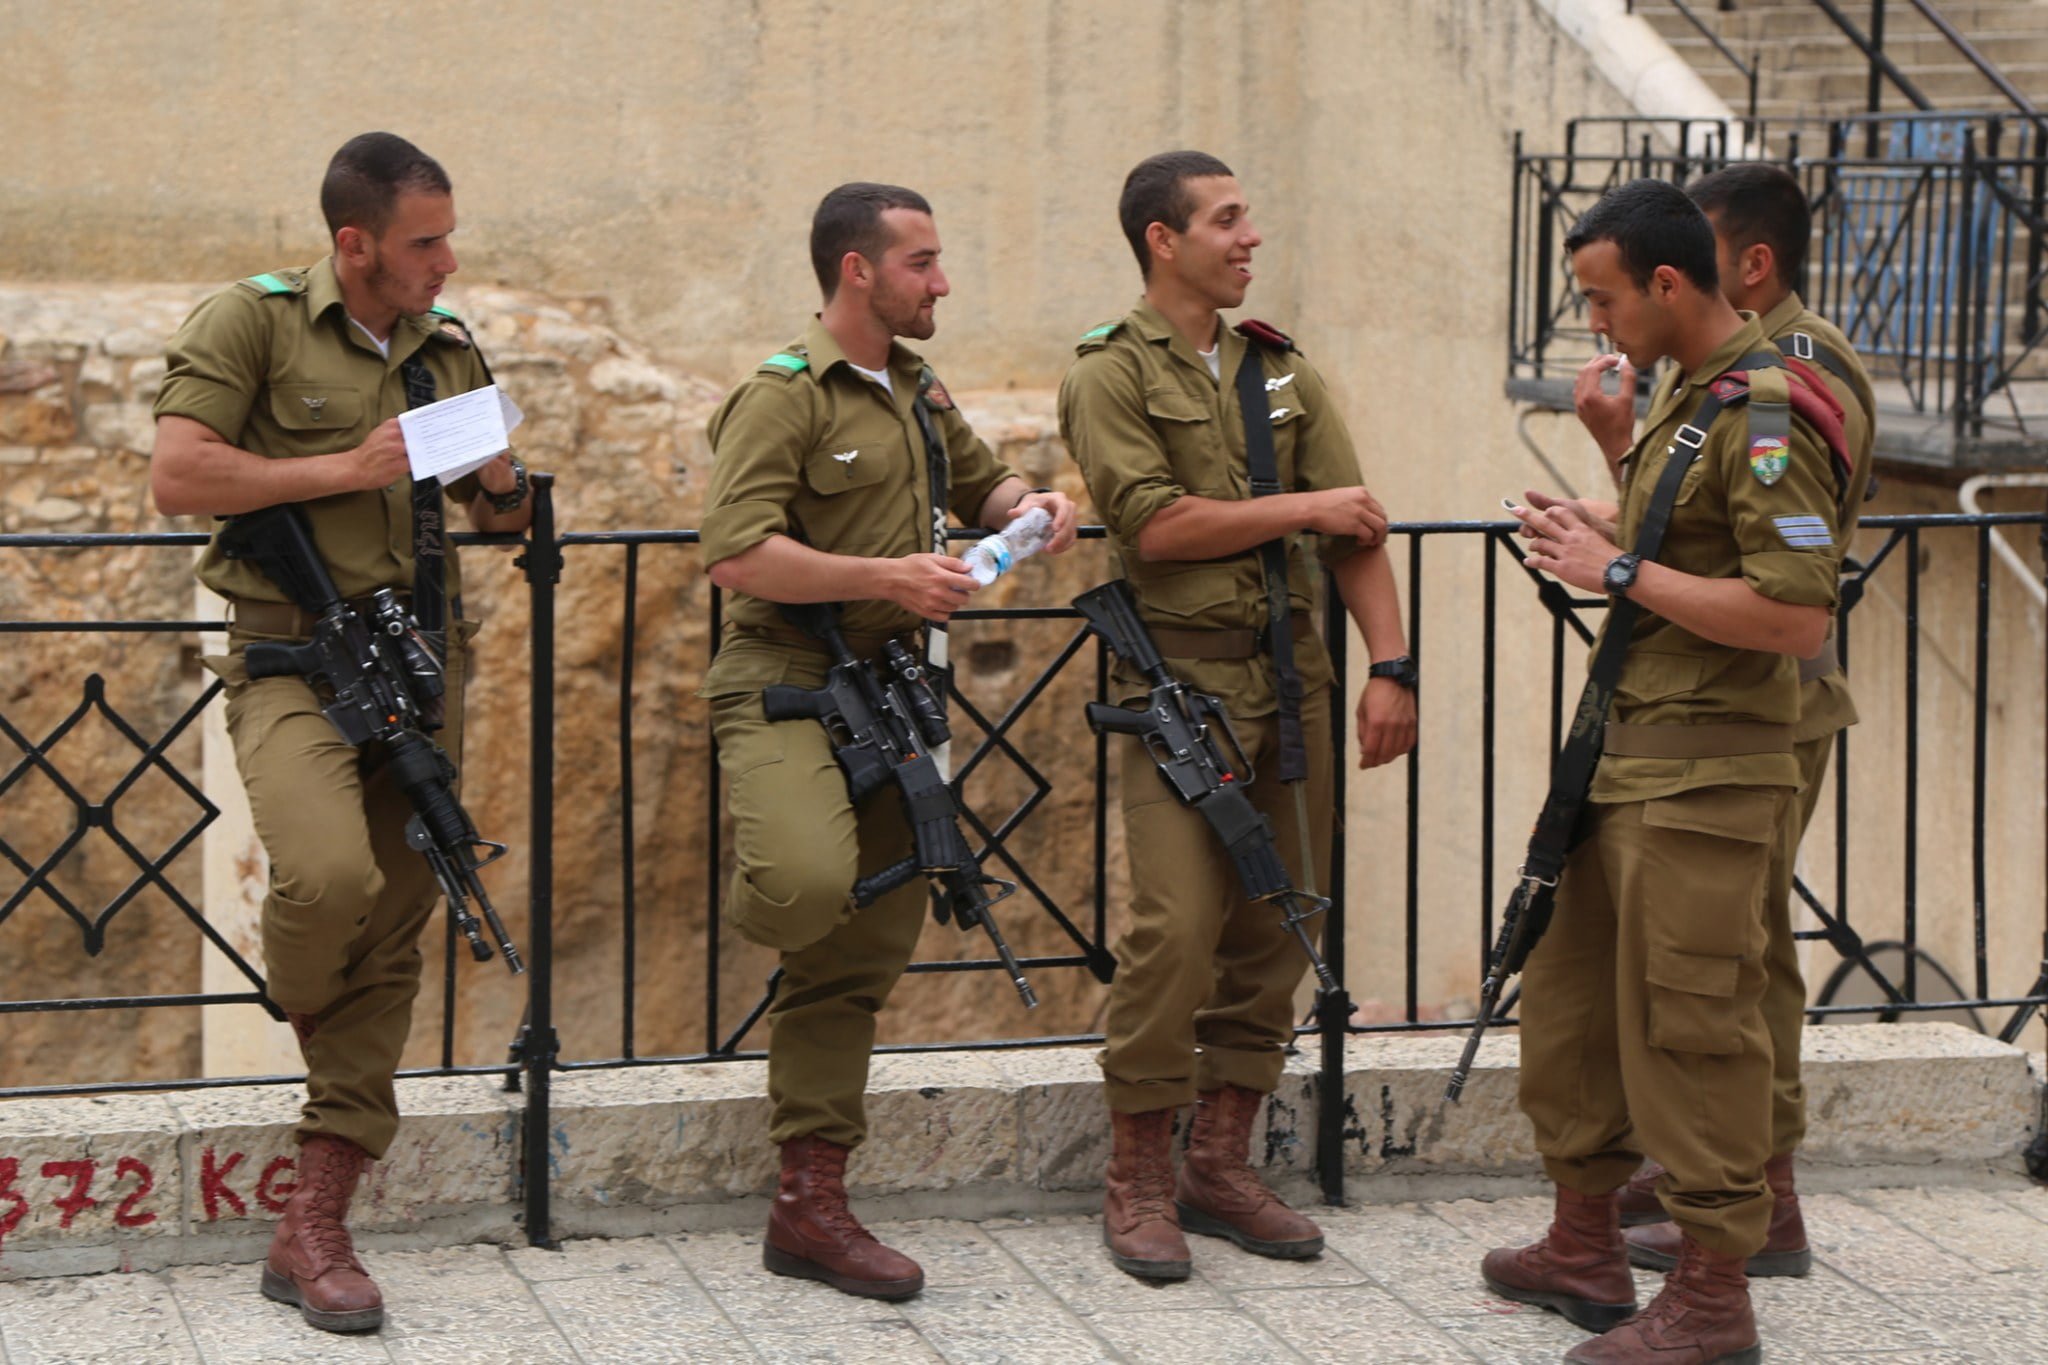 Hot Israeli Soldiers Tumblr